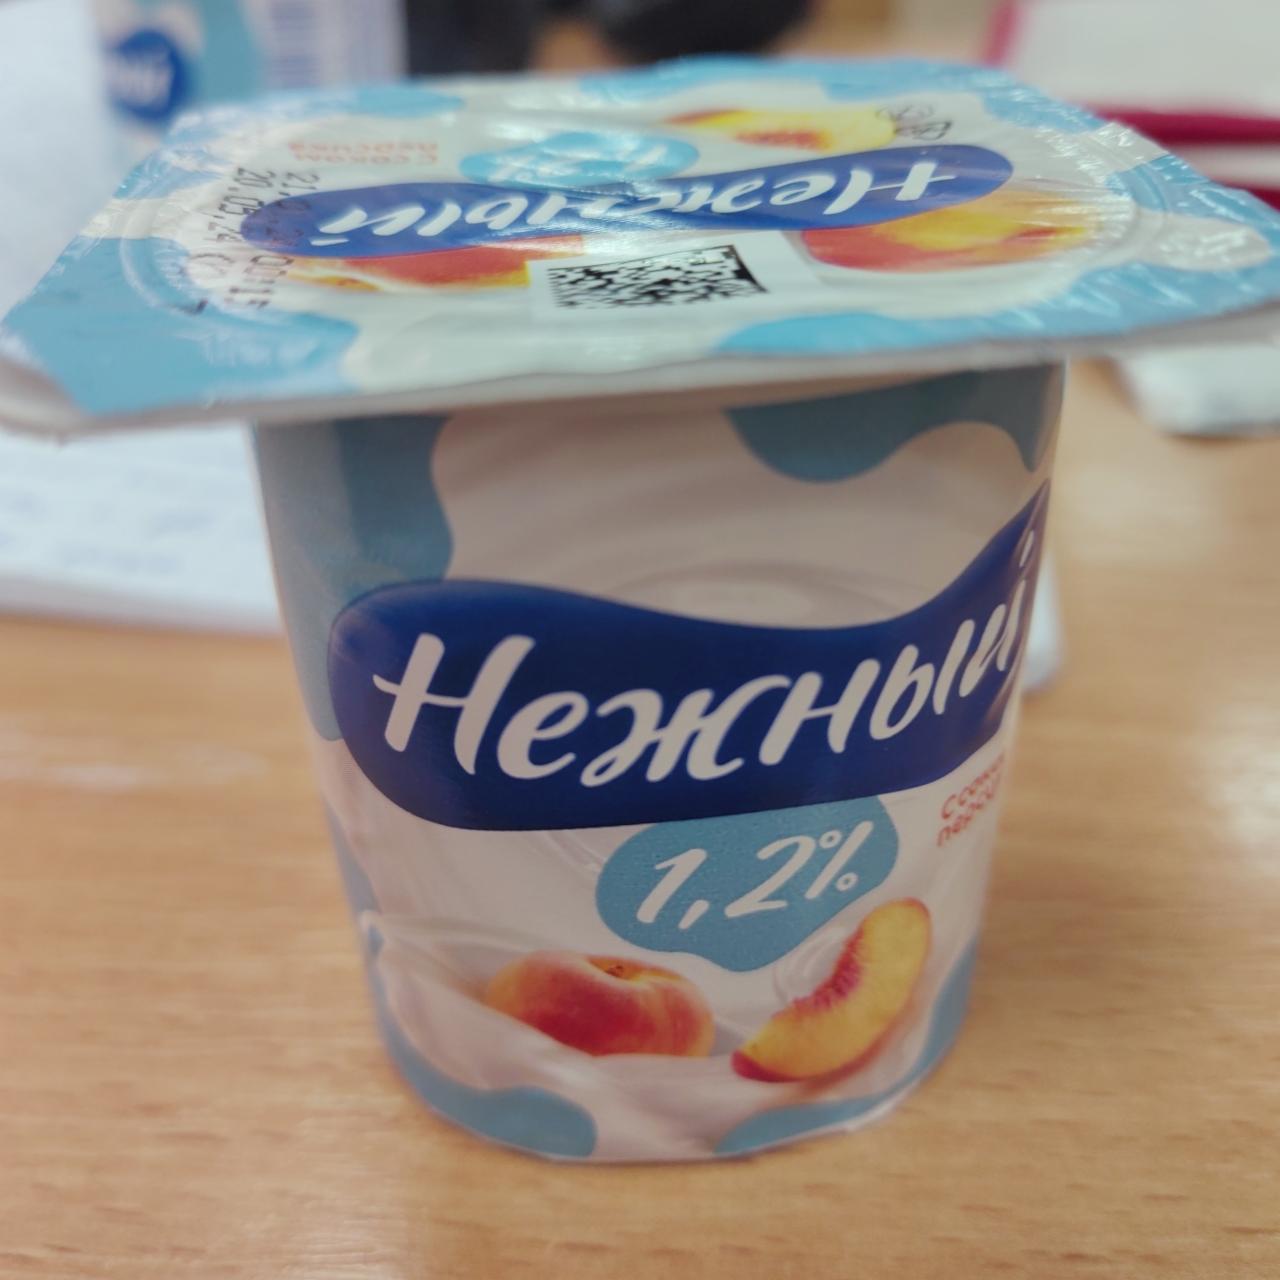 Фото - Продукт йогуртовый Нежный с соком персика 1.2% Campina